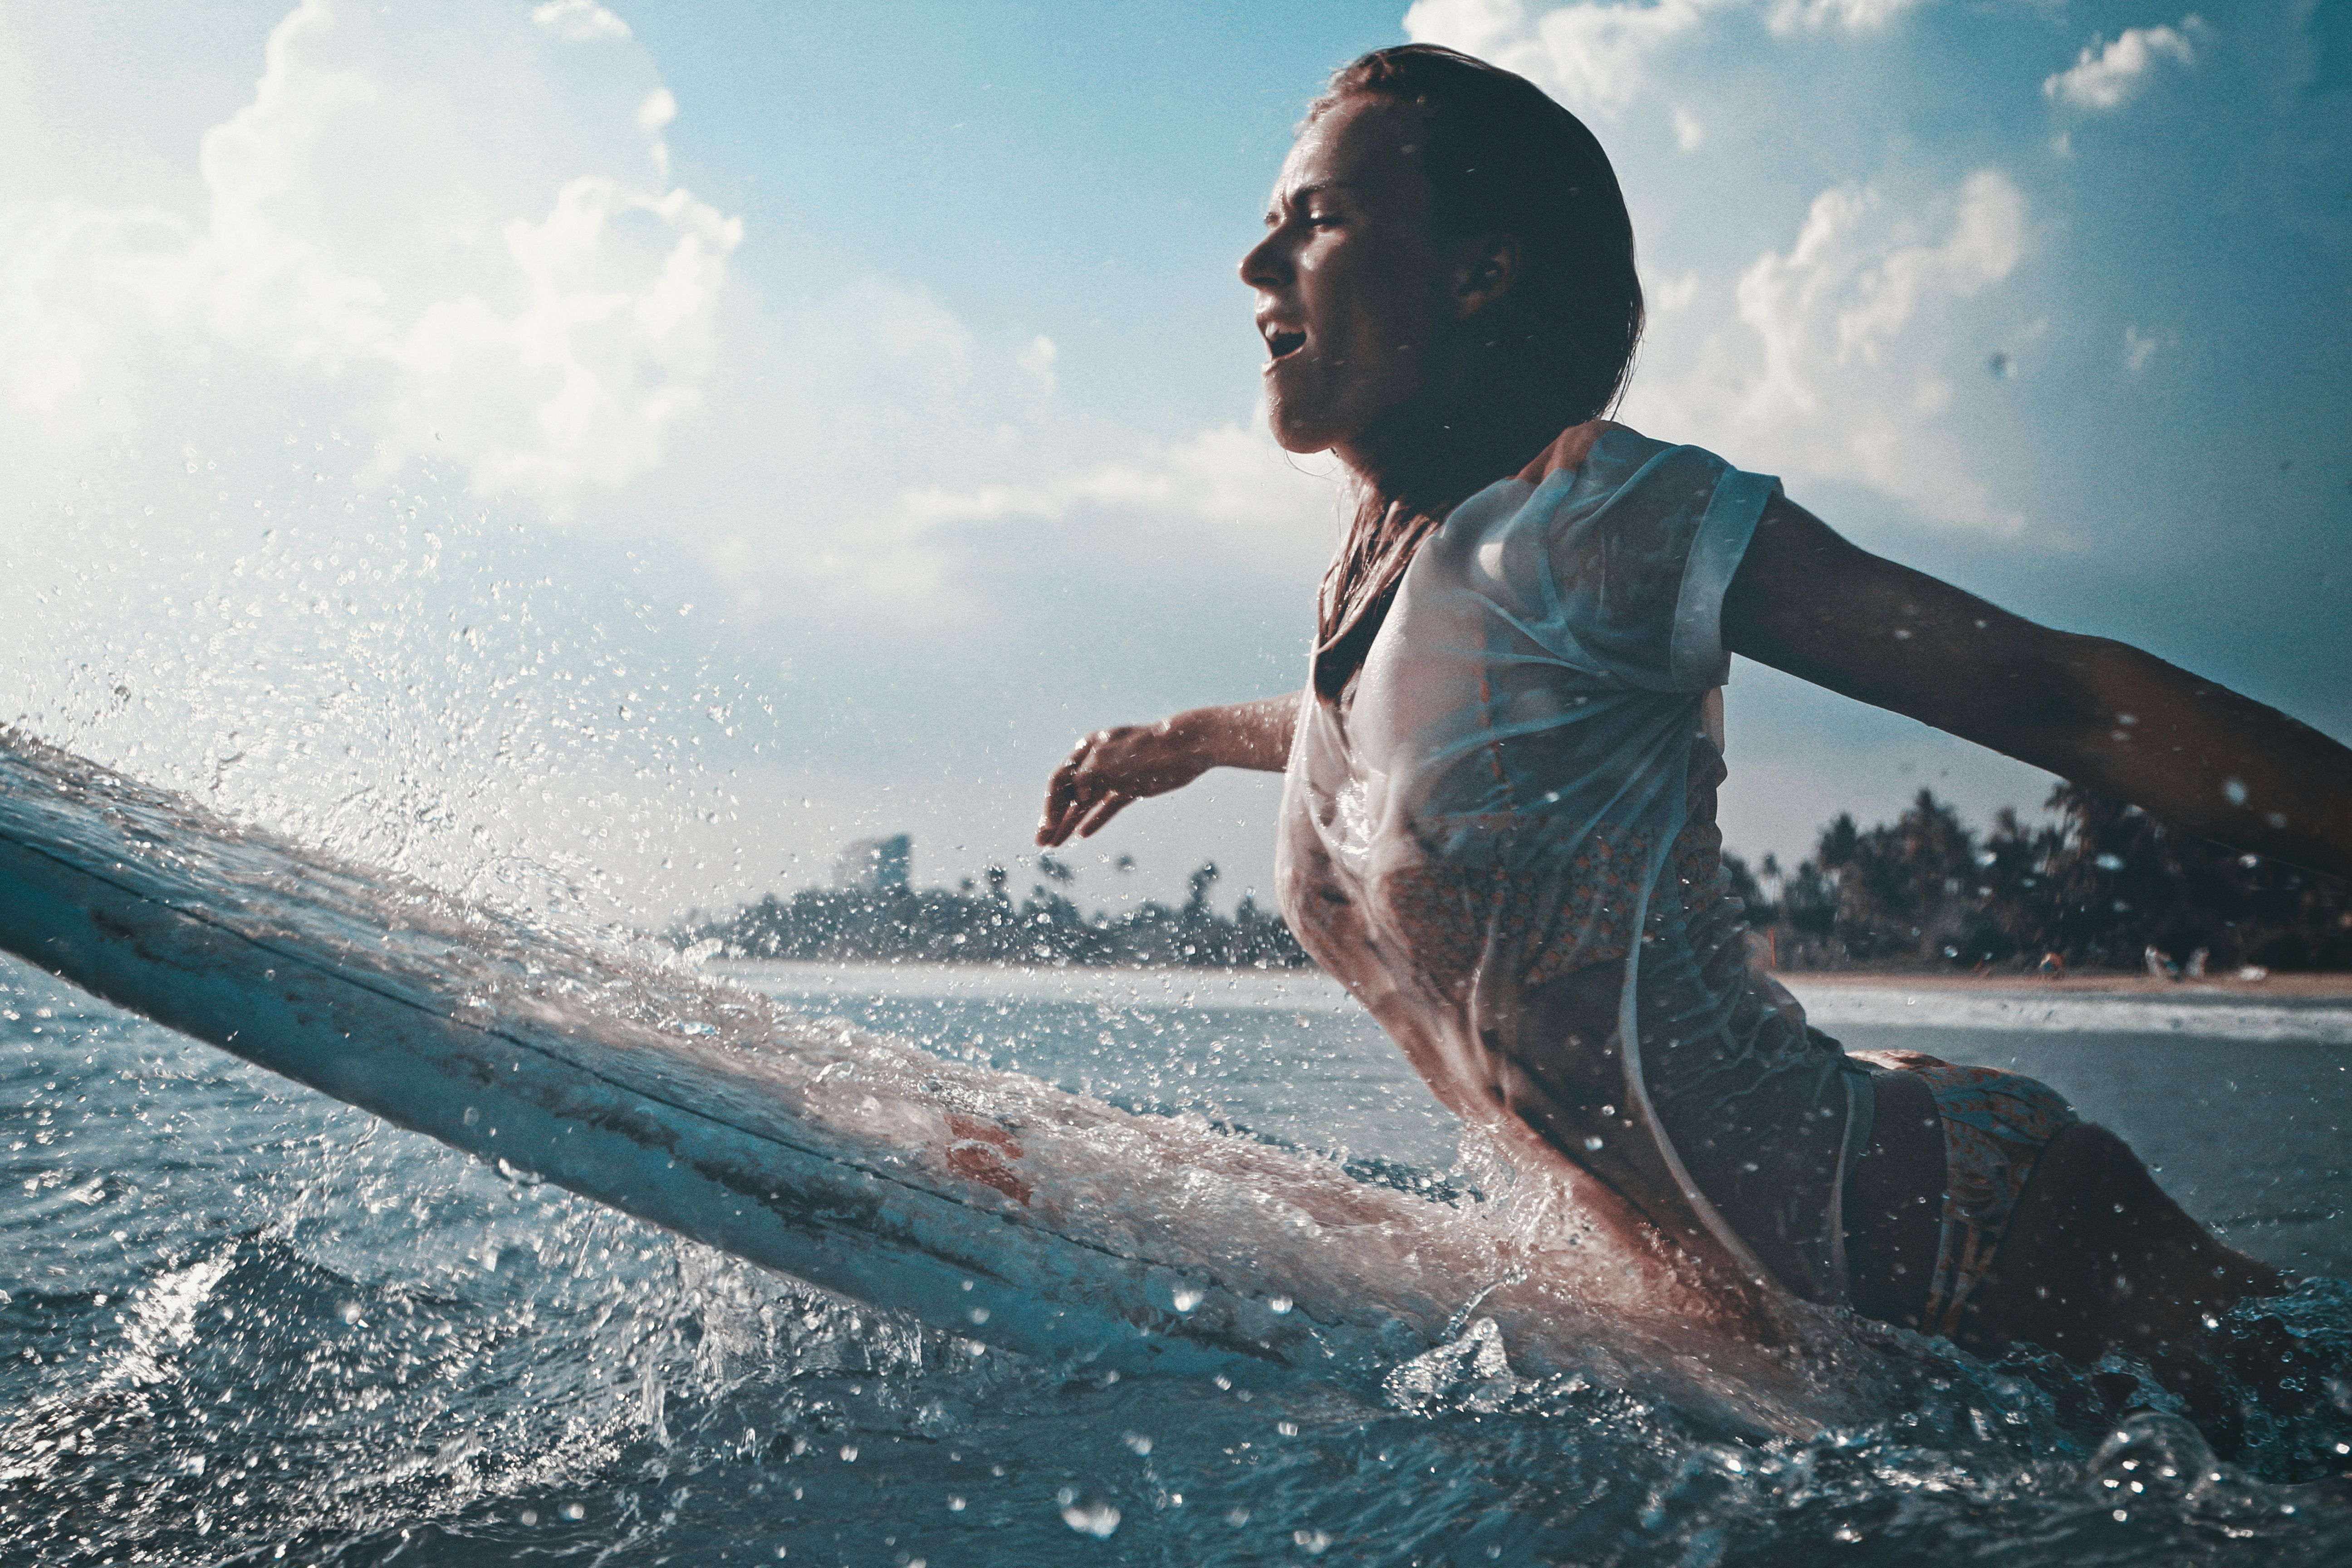 Russian surfing school in Bali